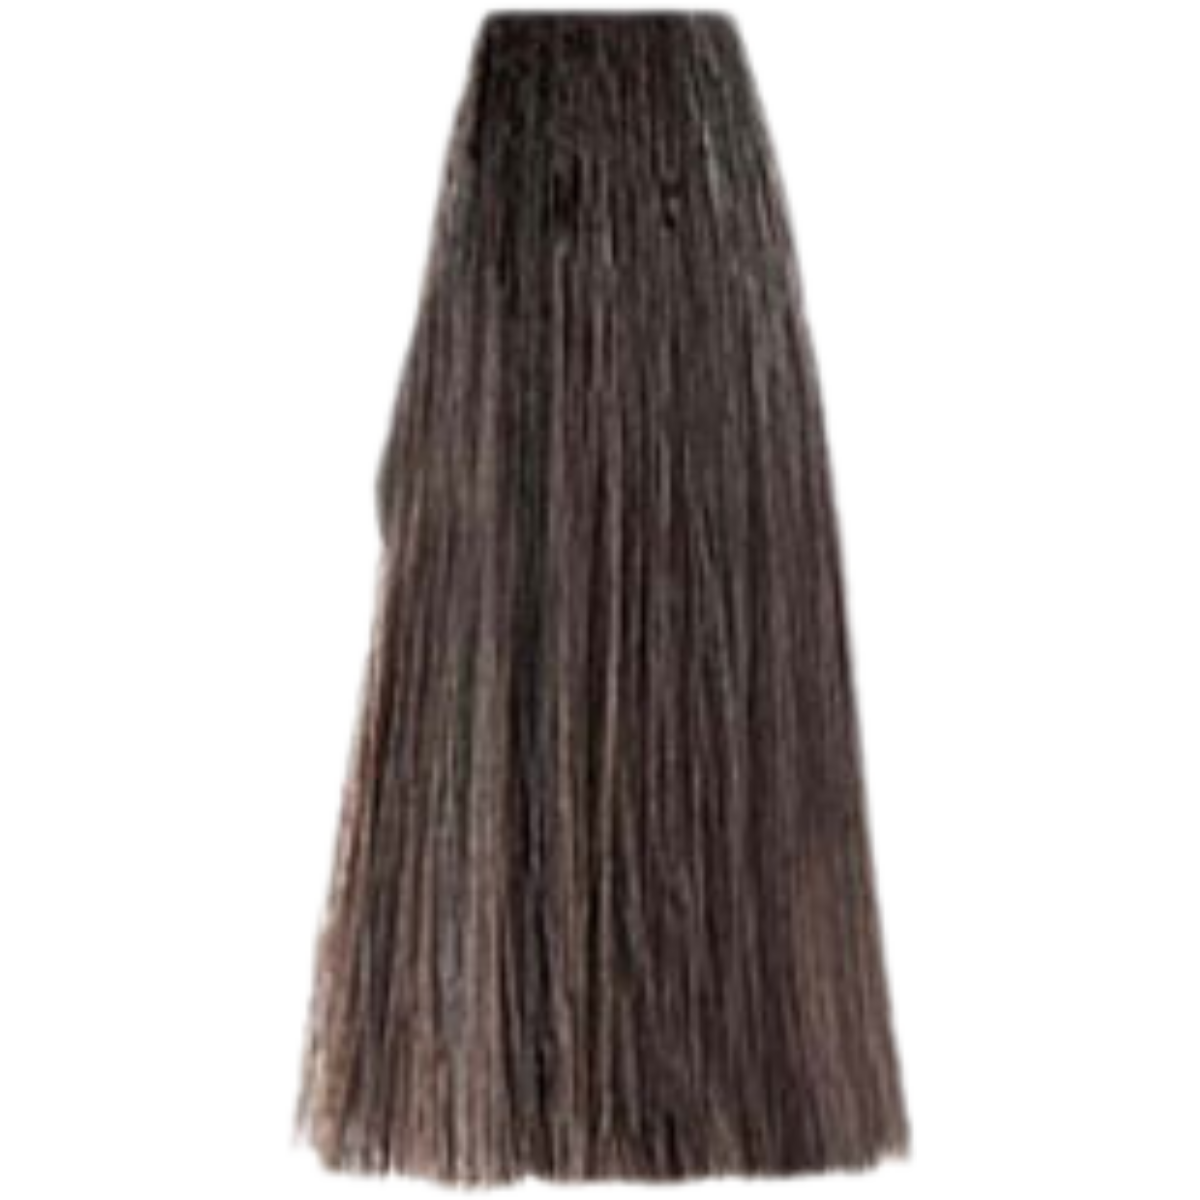 צבע שיער 6.07 DARK MAT BLONDE פארמויטה FarmaVita צבע לשיער 100 גרם